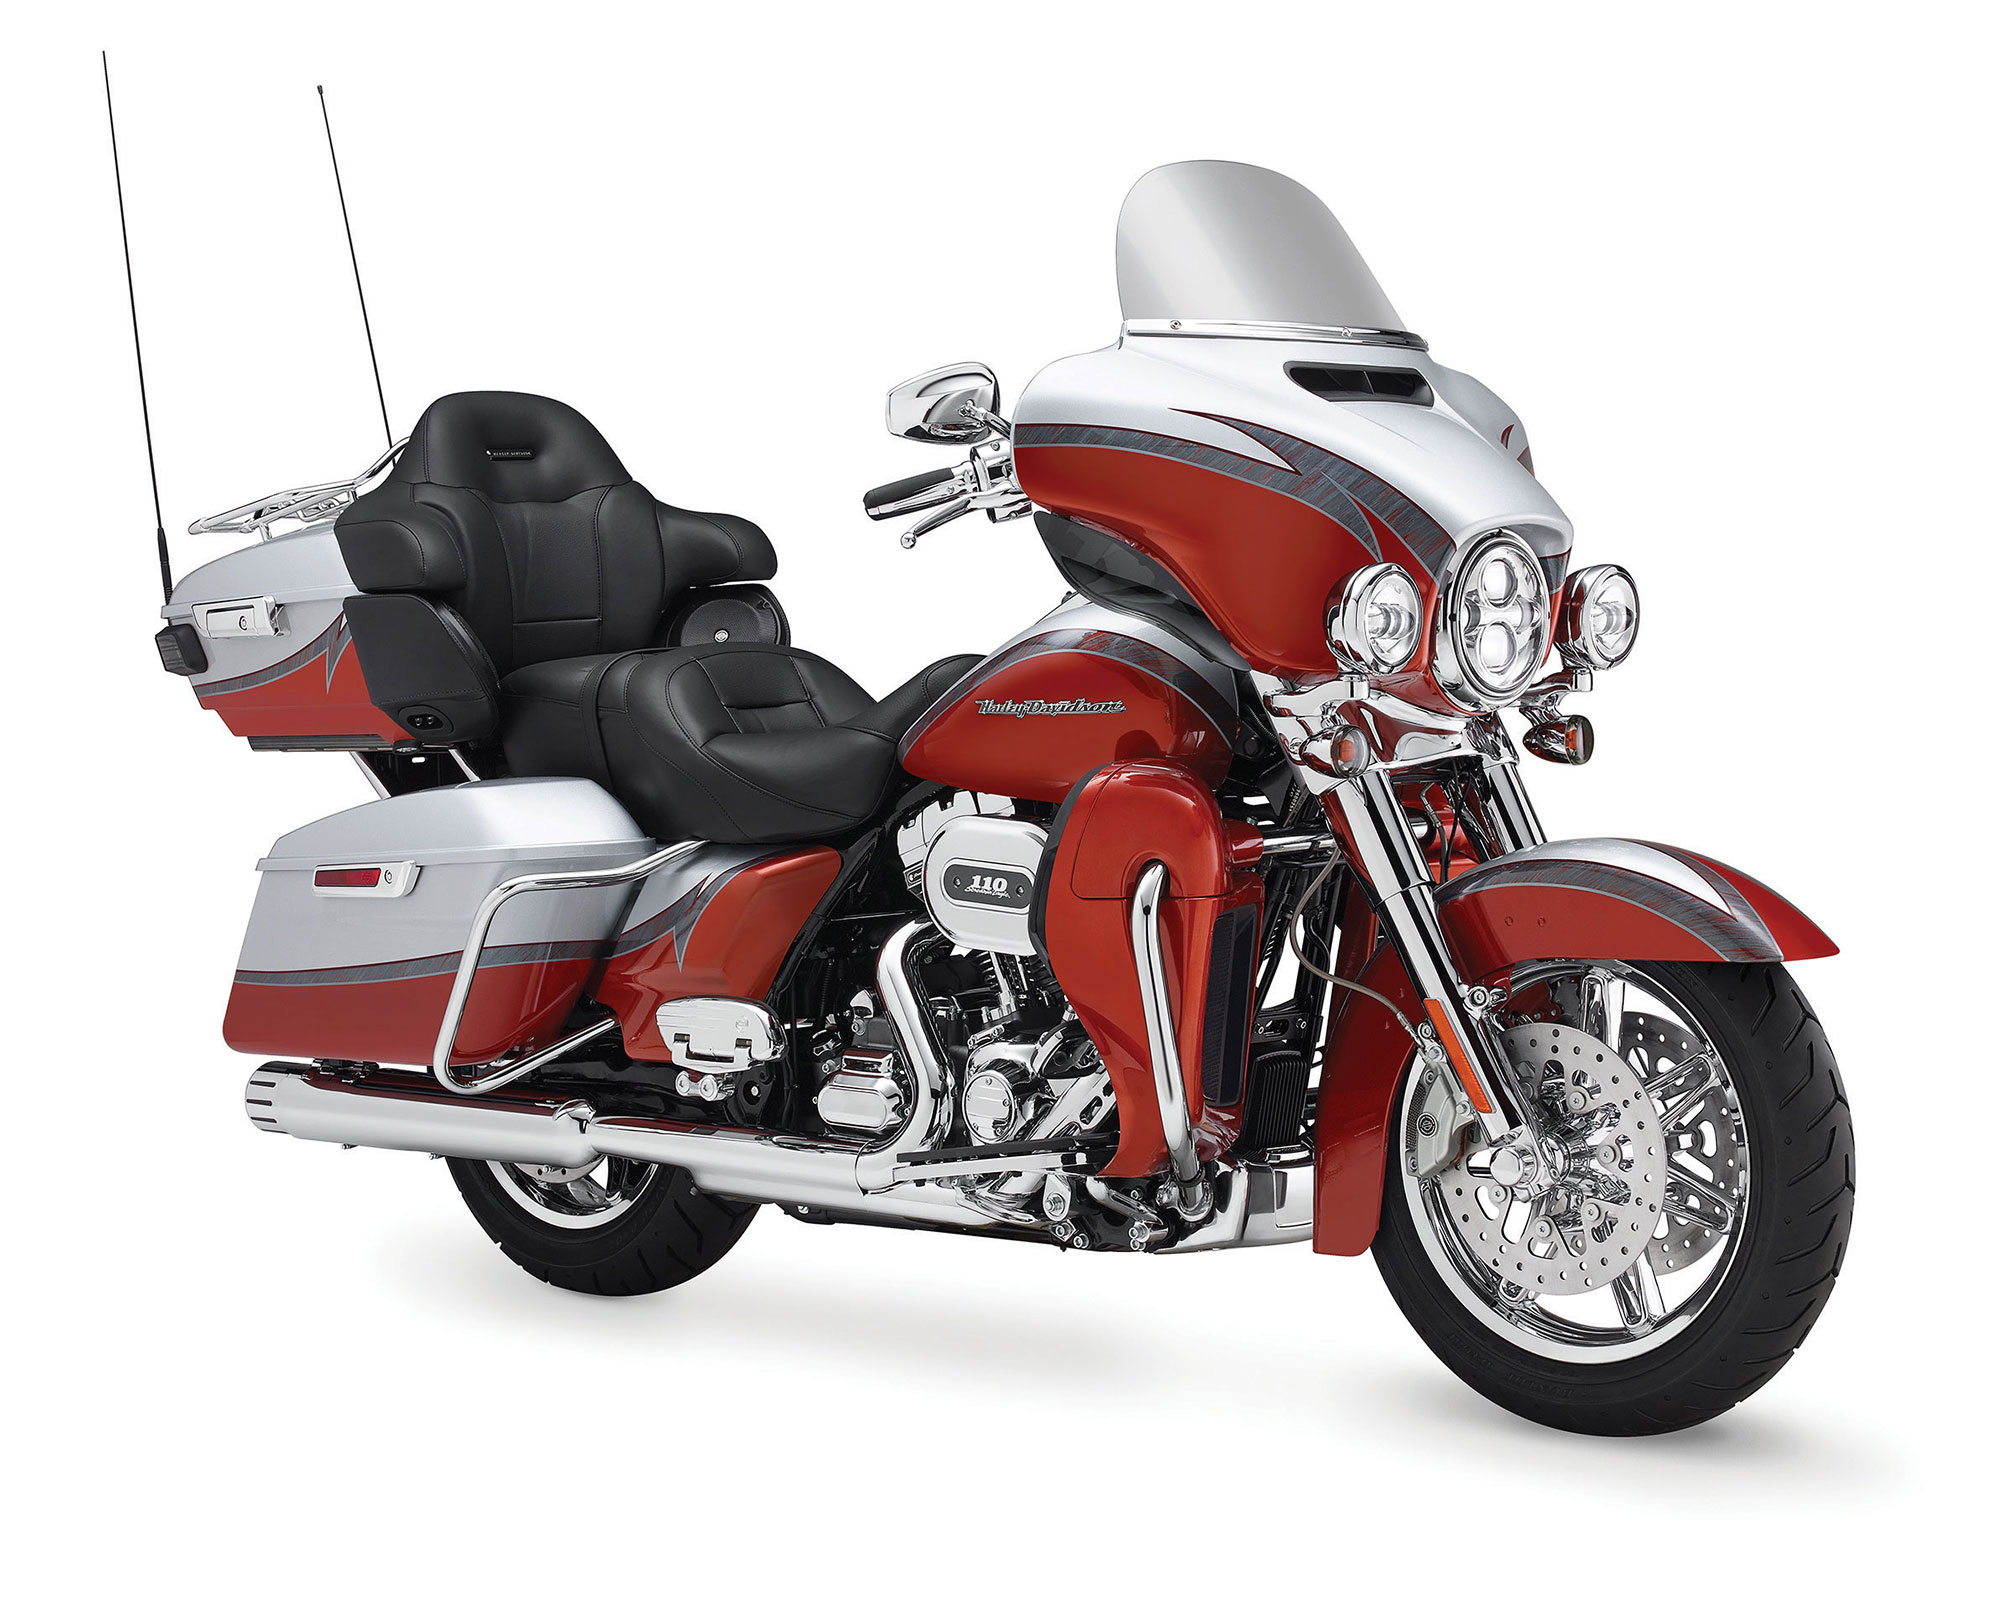 2014 Harley Davidson Flhtkse Cvo Limited Review